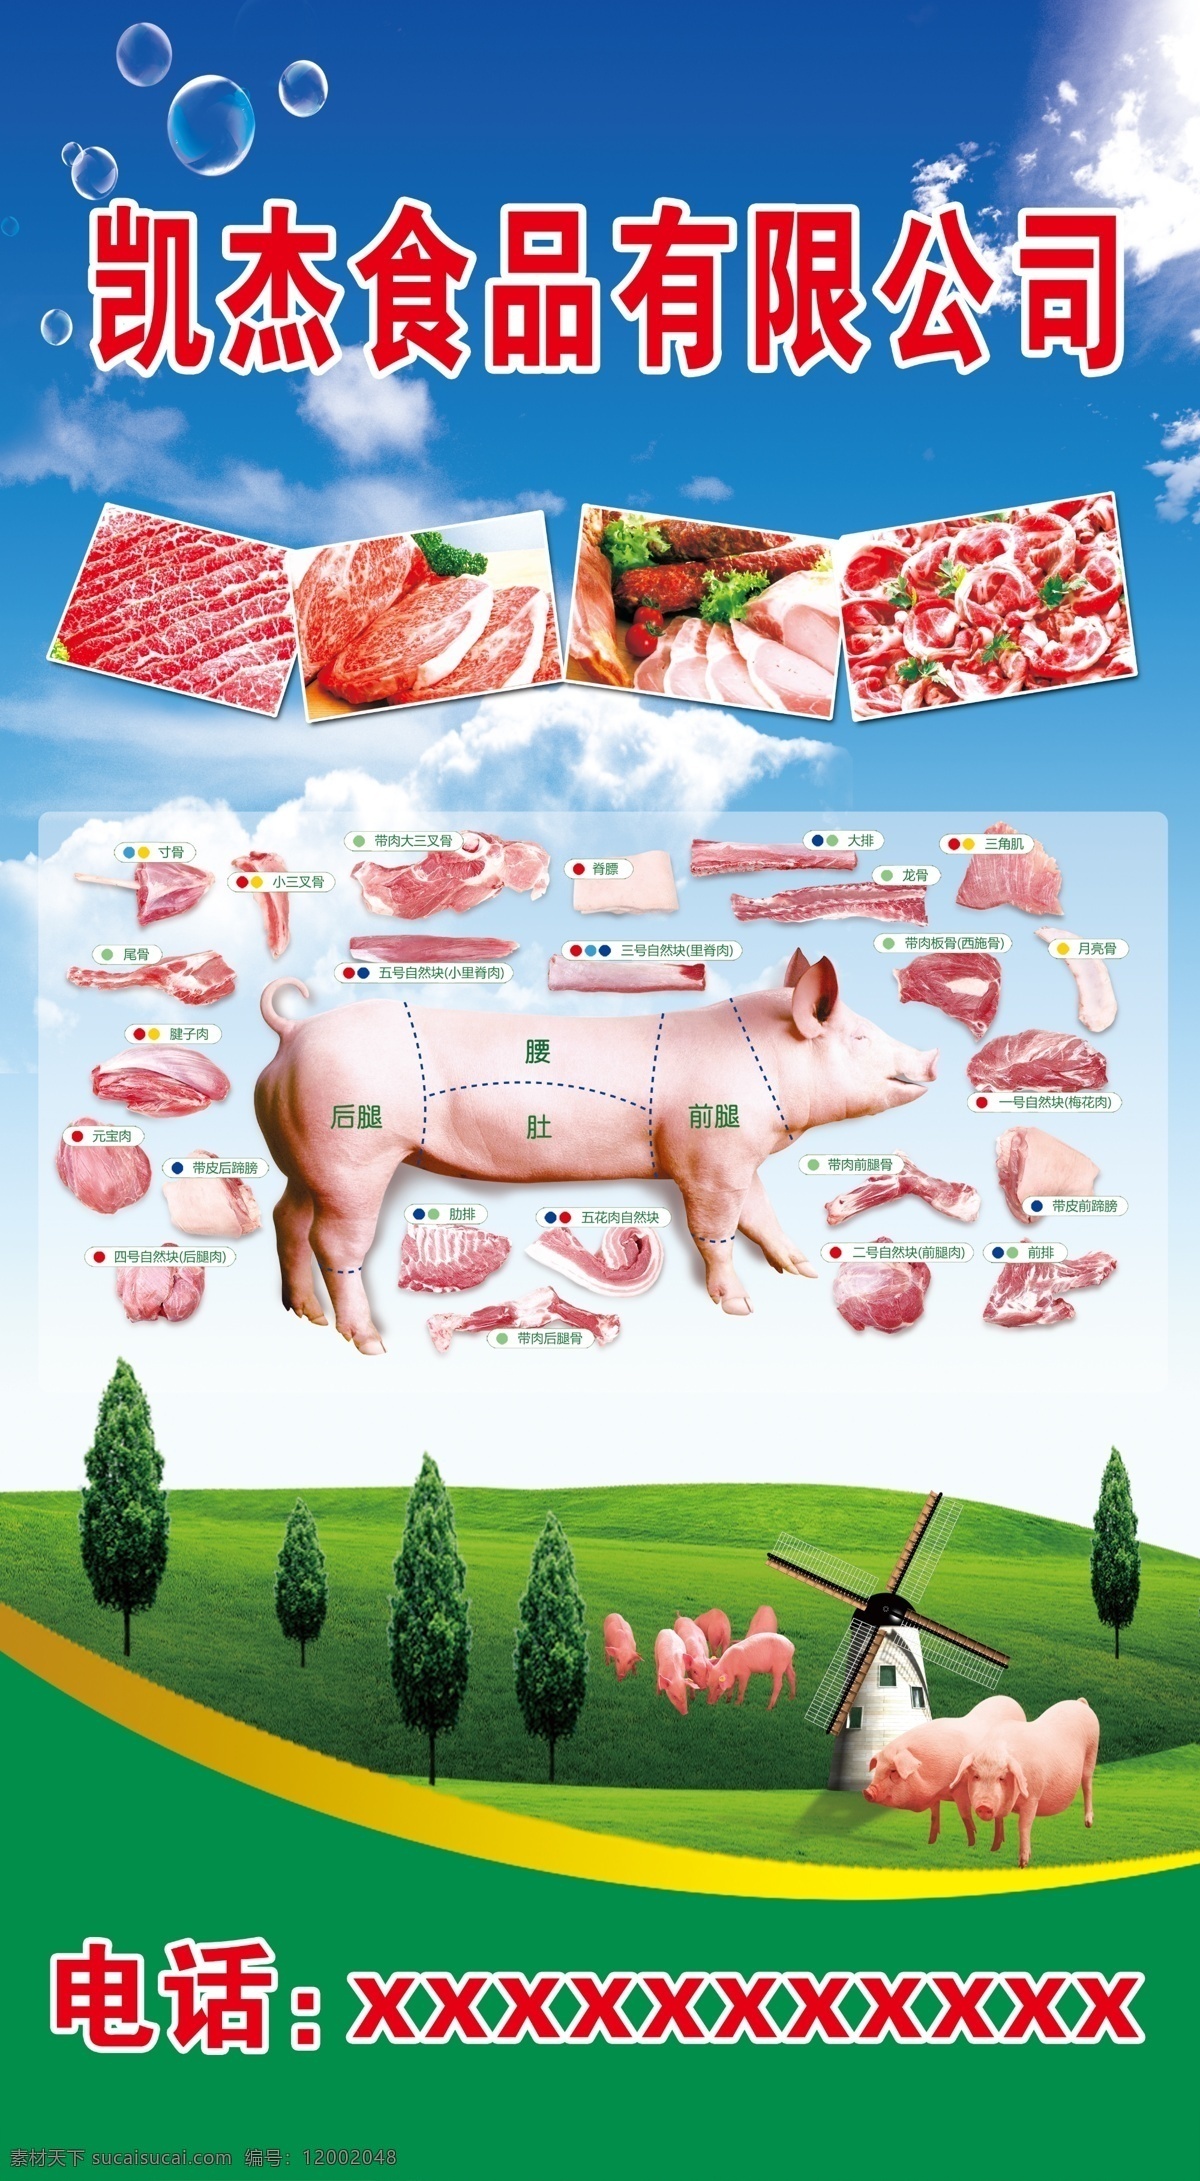 冷 鲜肉 猪肉 分解 图 冷鲜肉 肘肉分解图 猪肉展板 食品公司海报 猪肉详解图